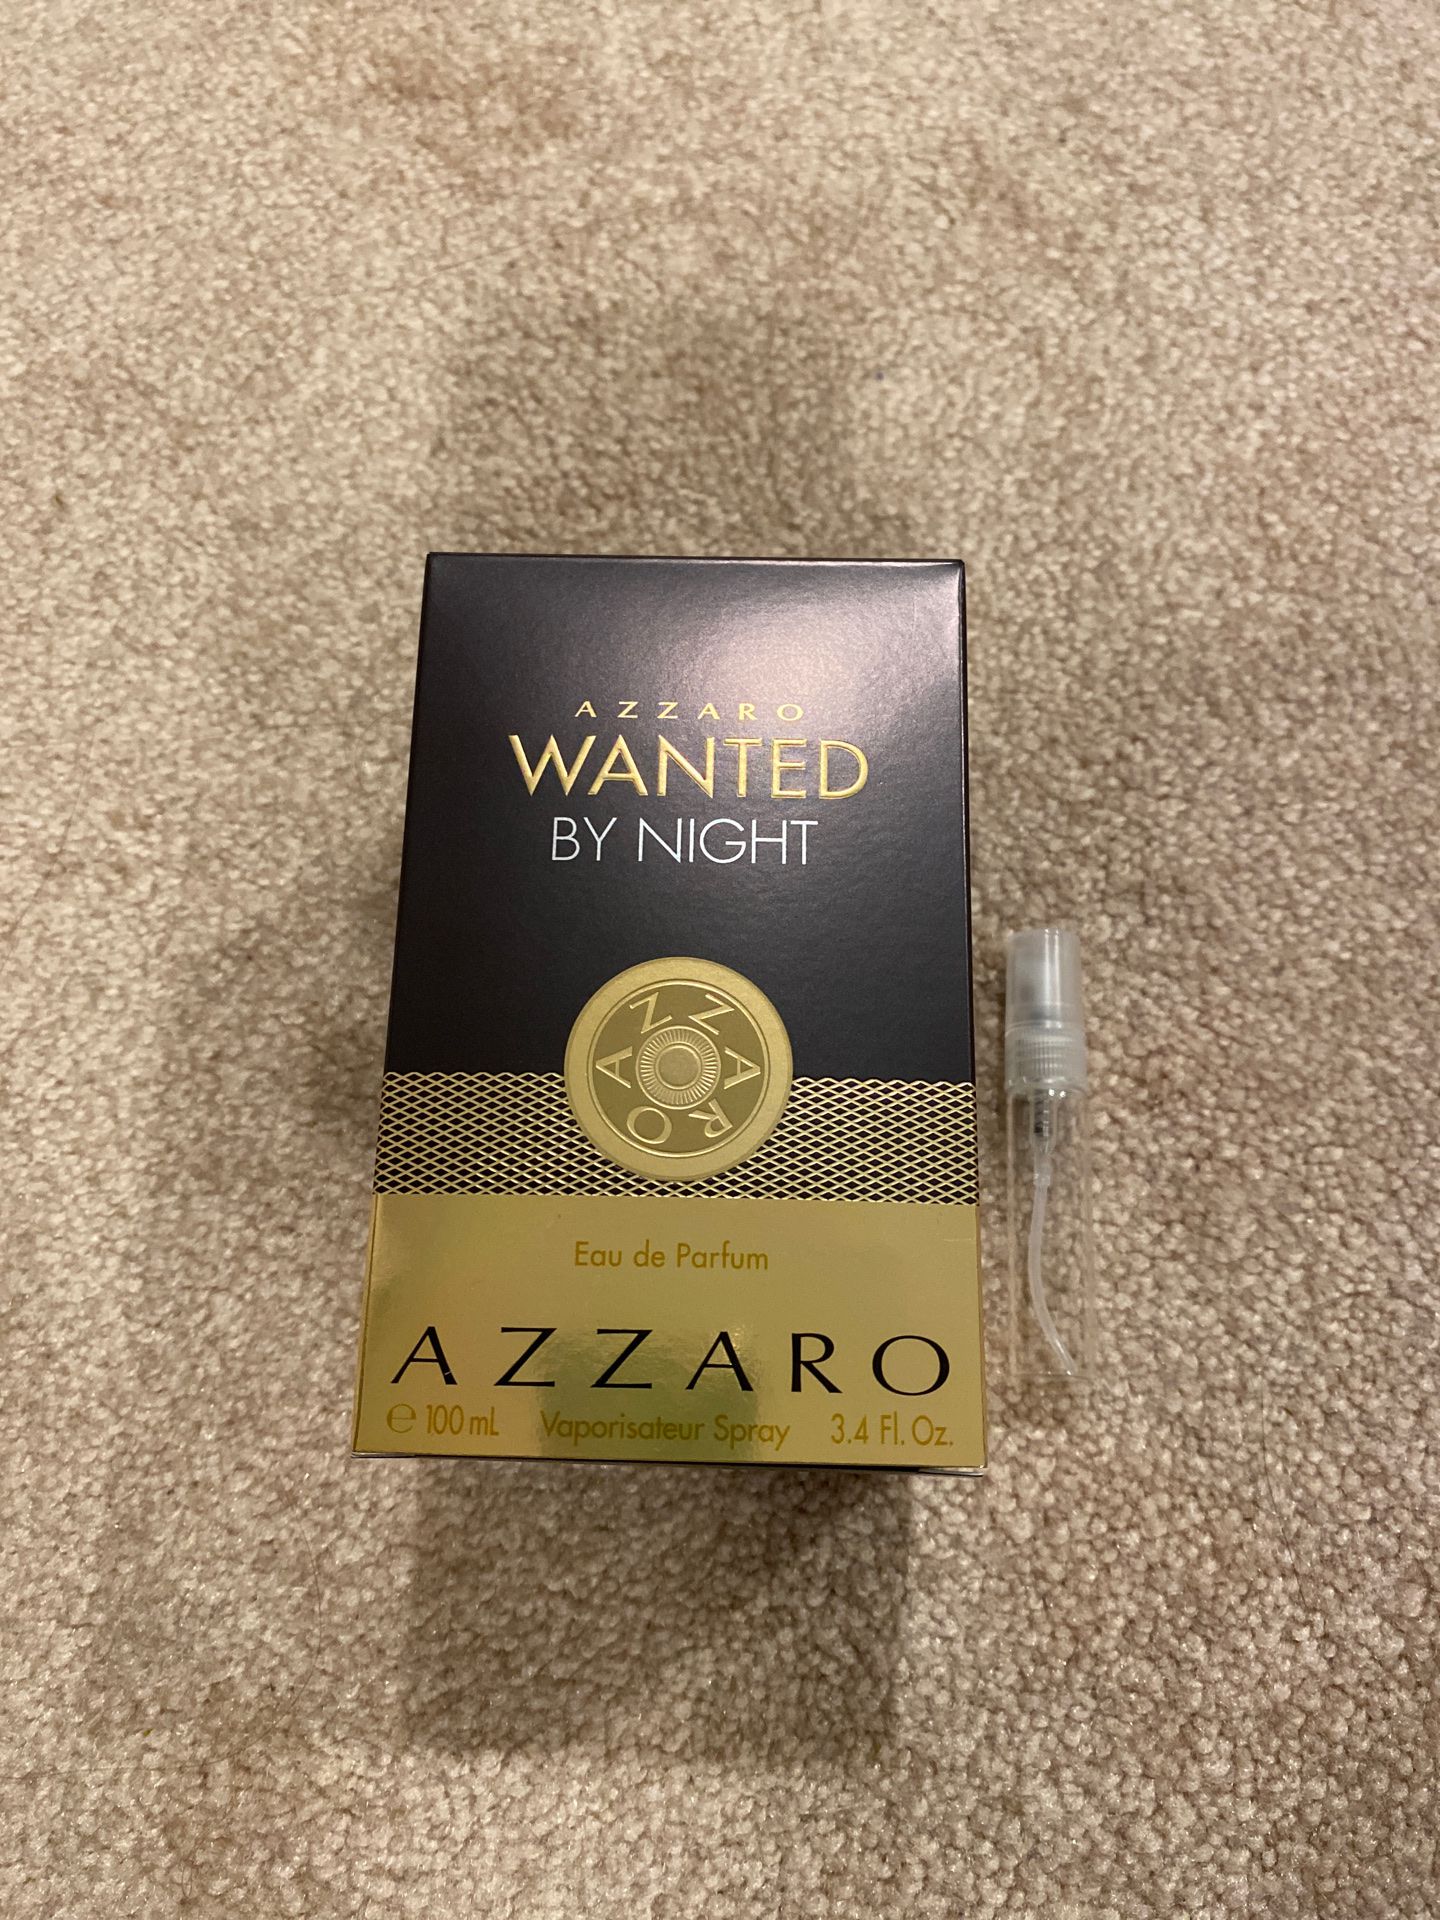 Azzaro wanted by night - eau de parfum